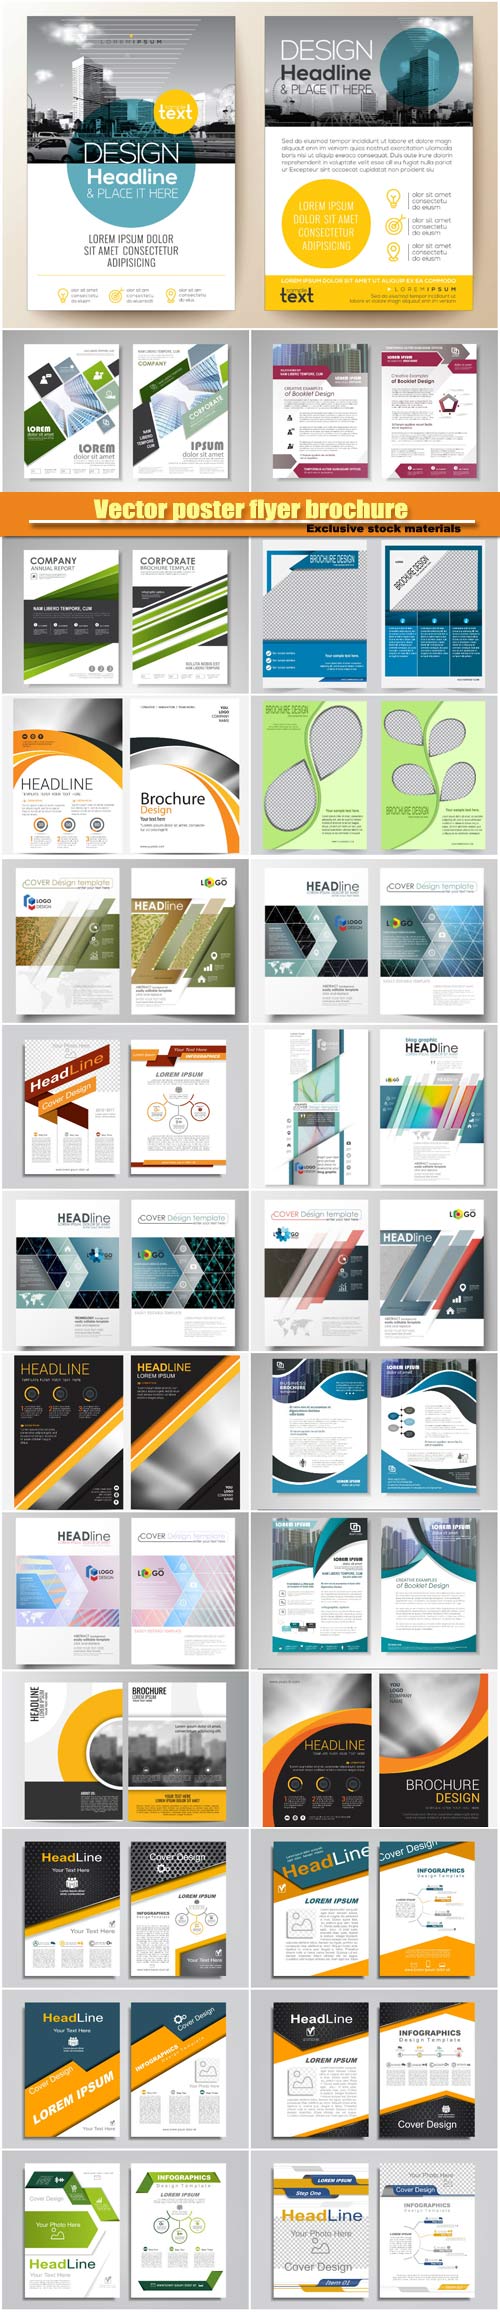 Brochure design layout, corporate cart design template